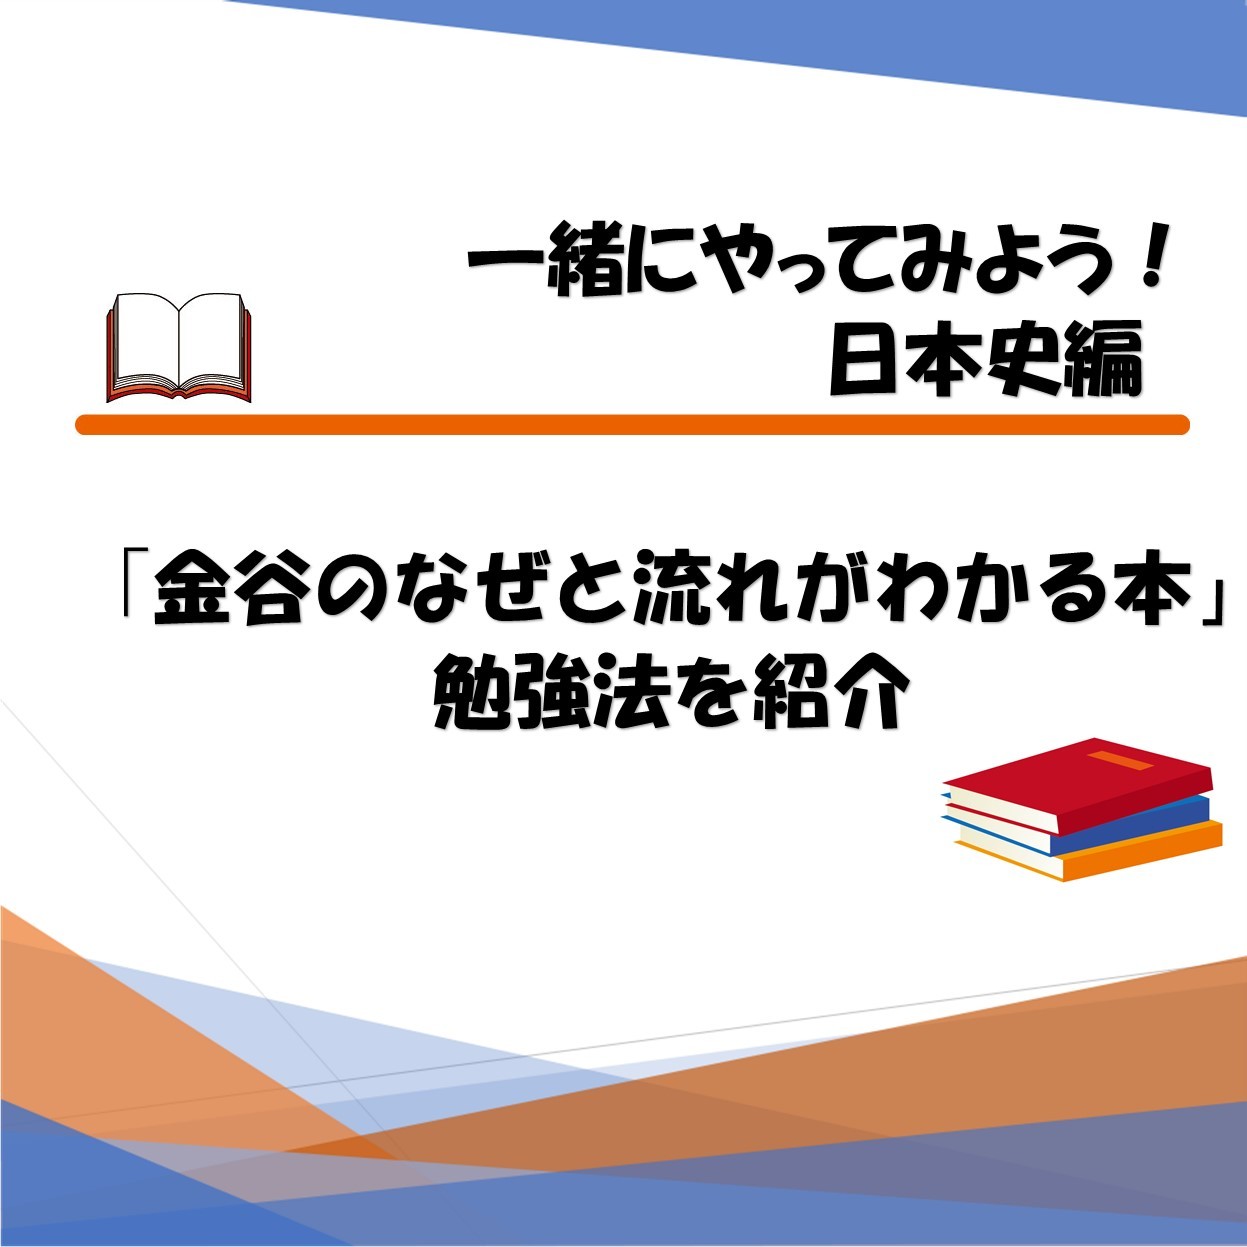 【一緒にやってみよう】日本史「金谷なぜと流れがわかる本」勉強法